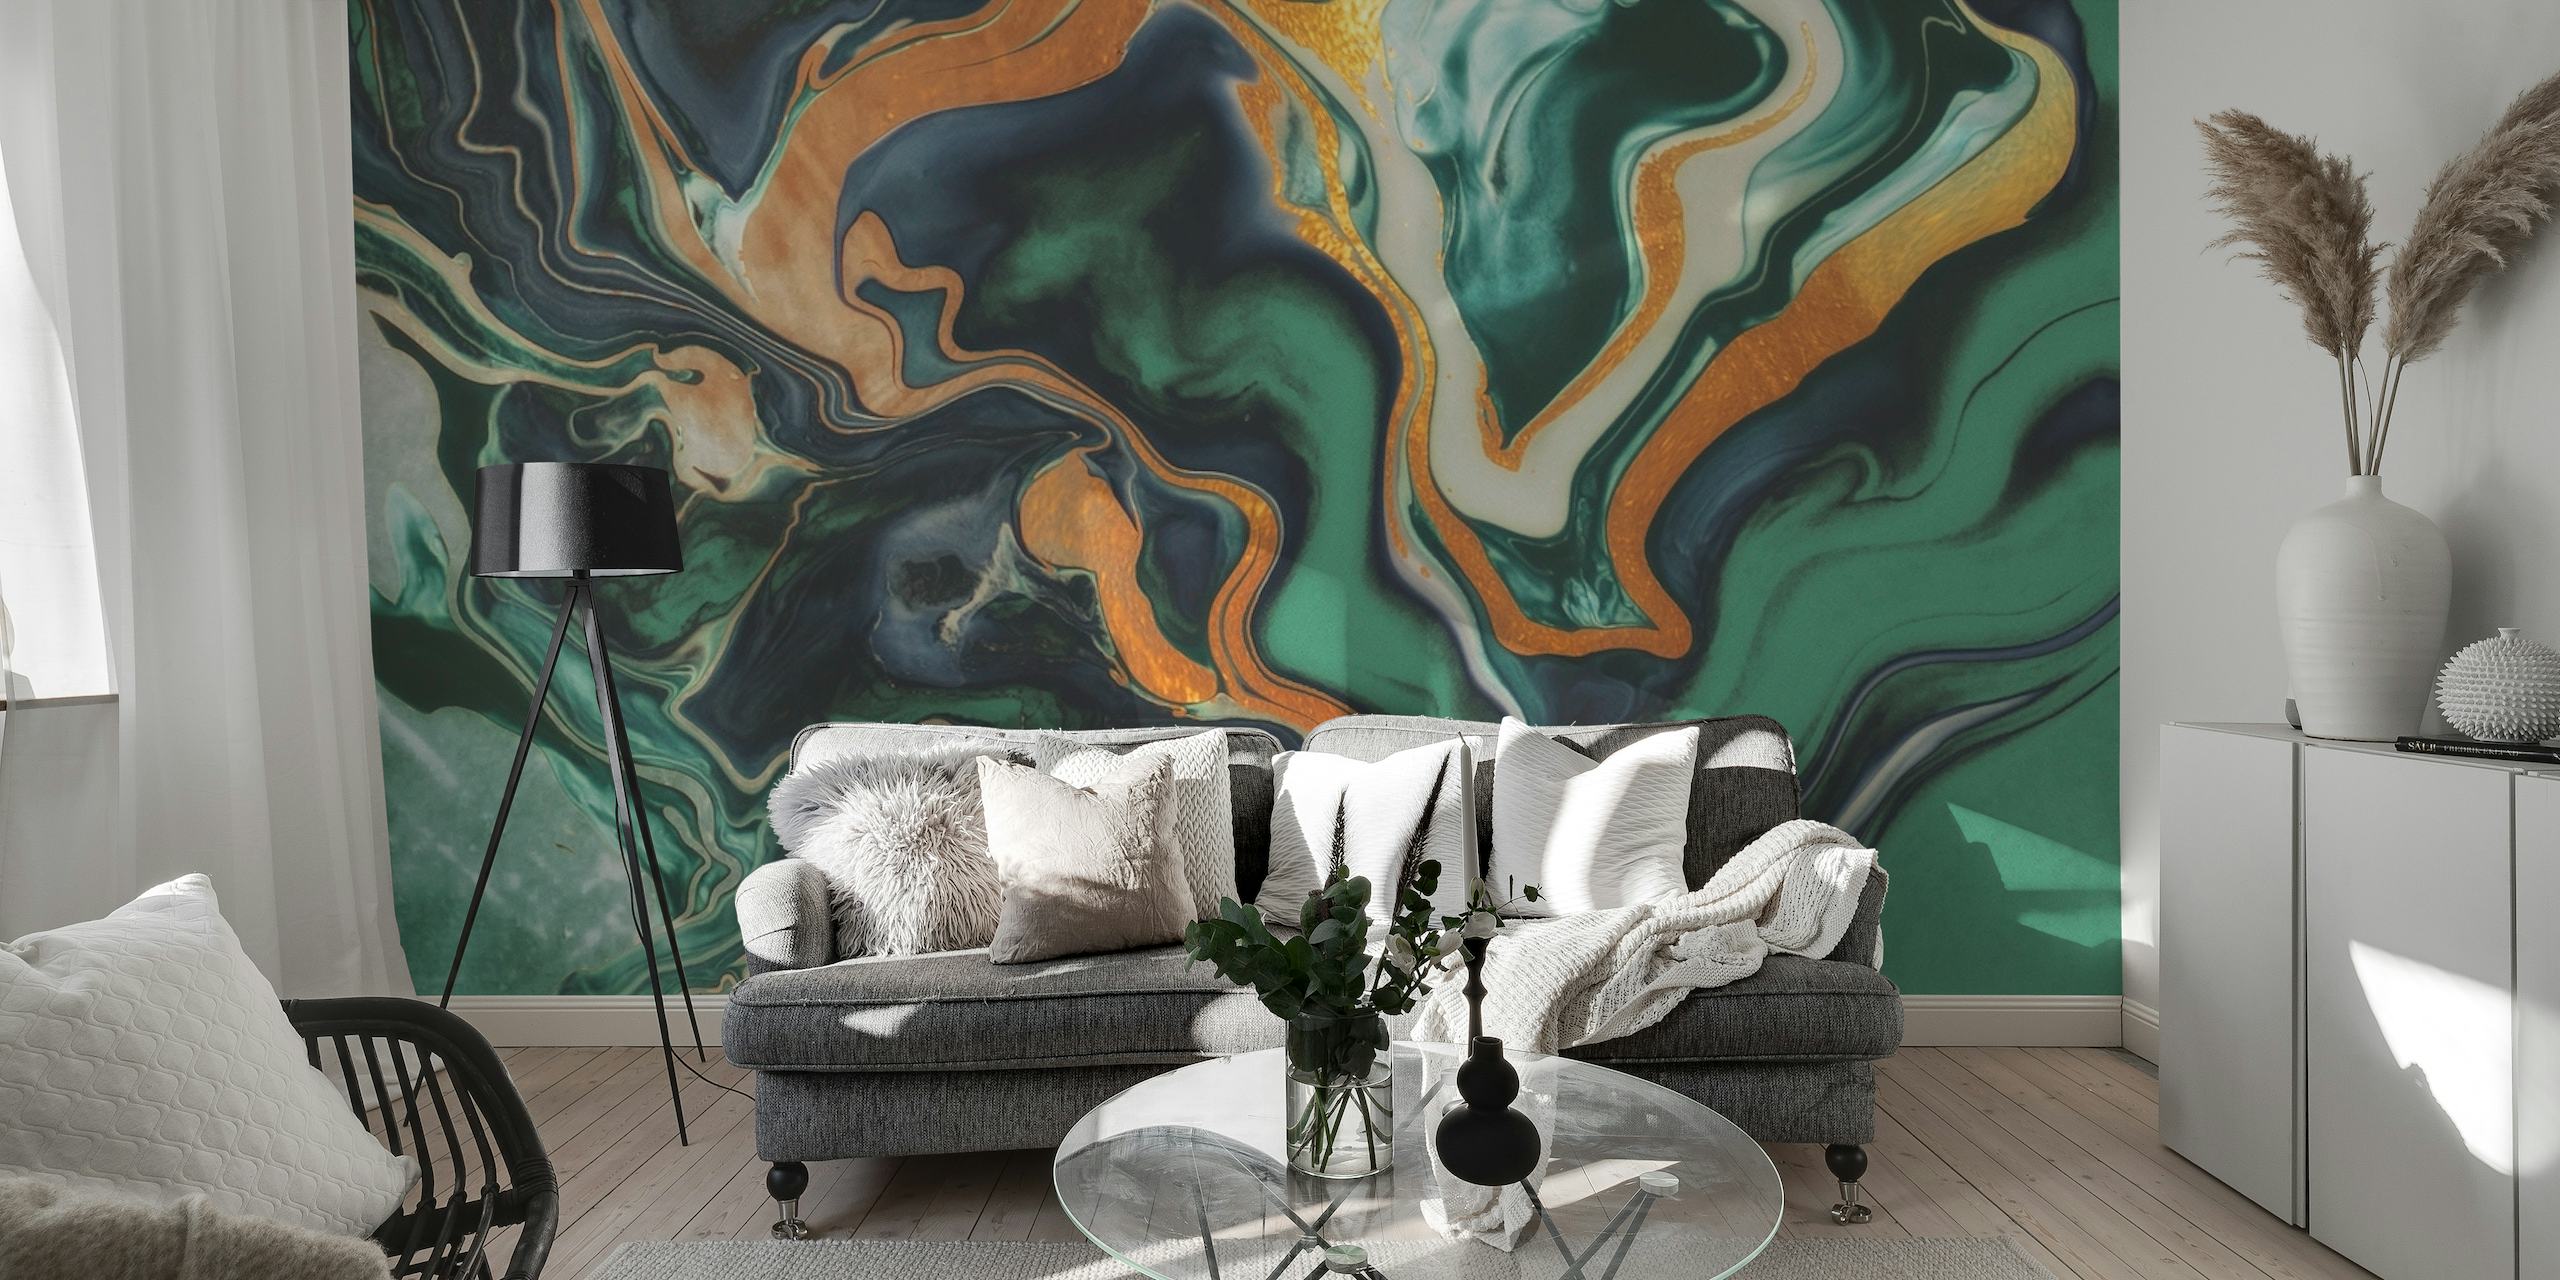 Zidna slika sa smaragdno zelenim i zlatnim mramornim uzorkom za luksuzno uređenje interijera